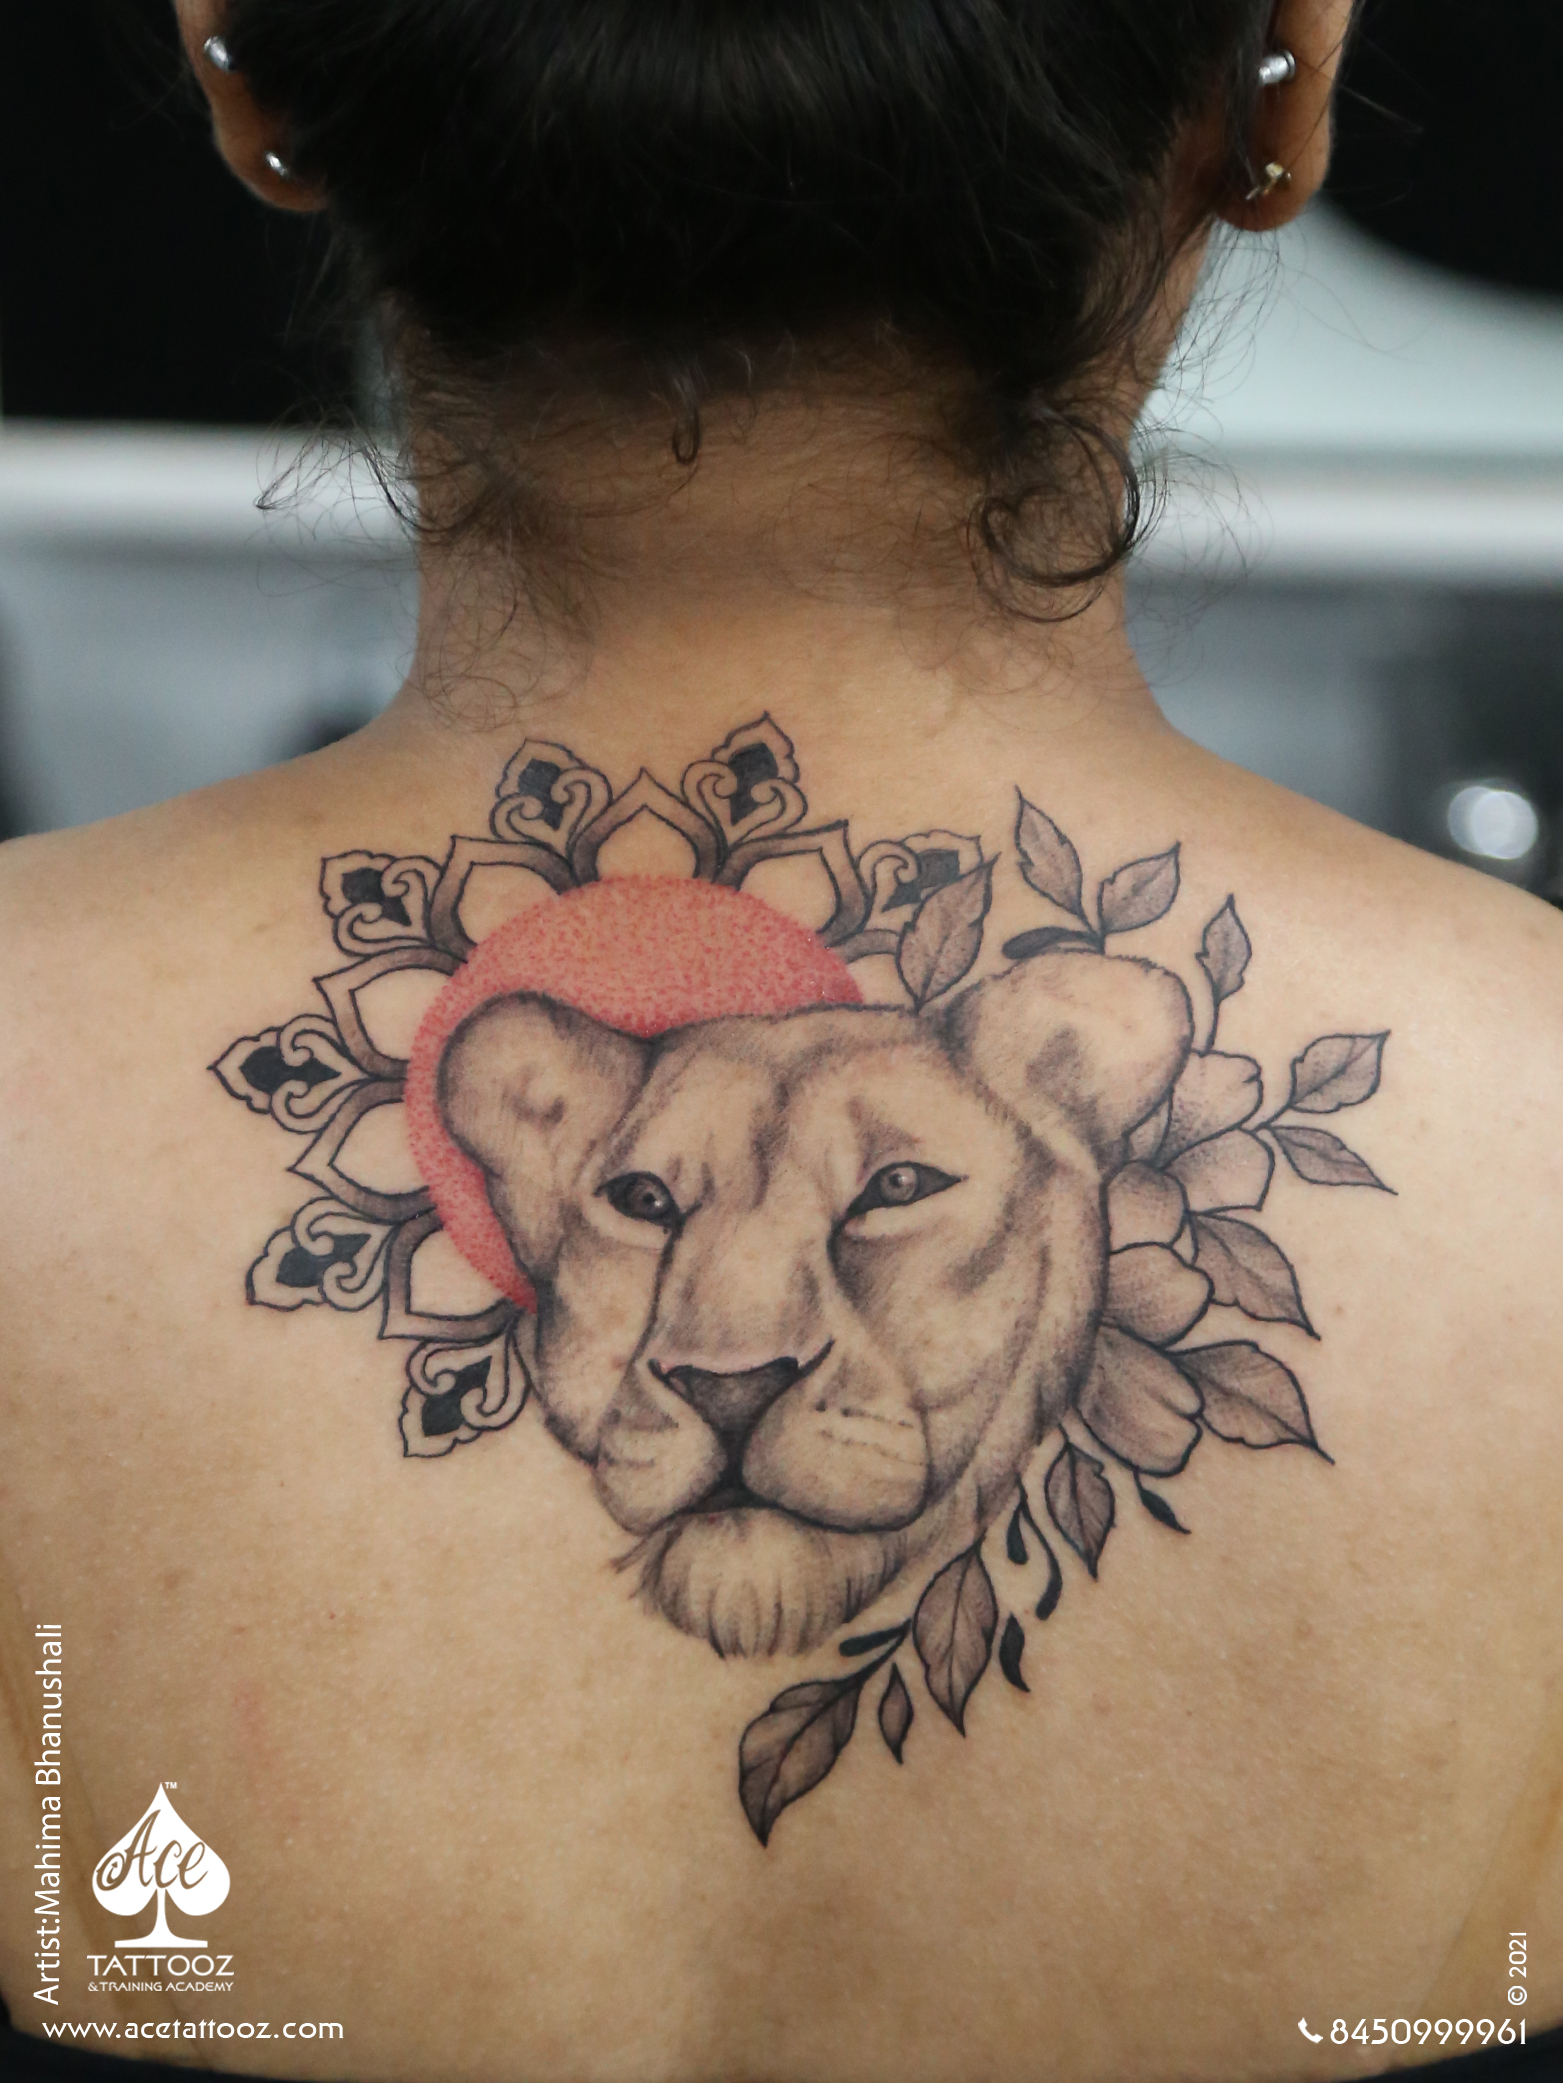 Floral Lioness Tattoo on Back - Ace Tattooz